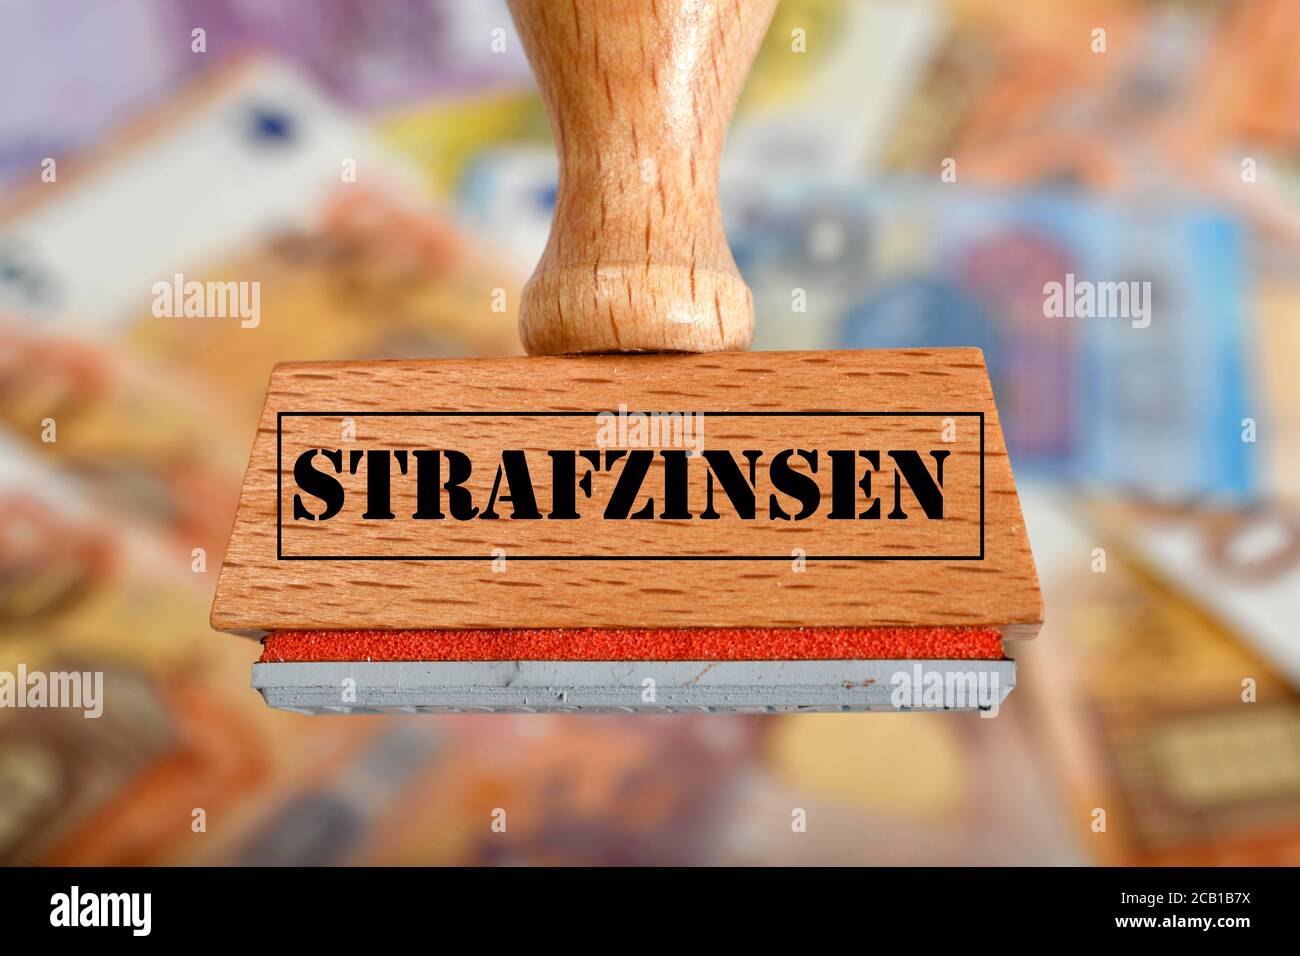 PHOTOMONTAGE, image symbole intérêt négatif, timbre avec inscription STRAFZINSEN, sur les billets EN EUROS, Allemagne Banque D'Images